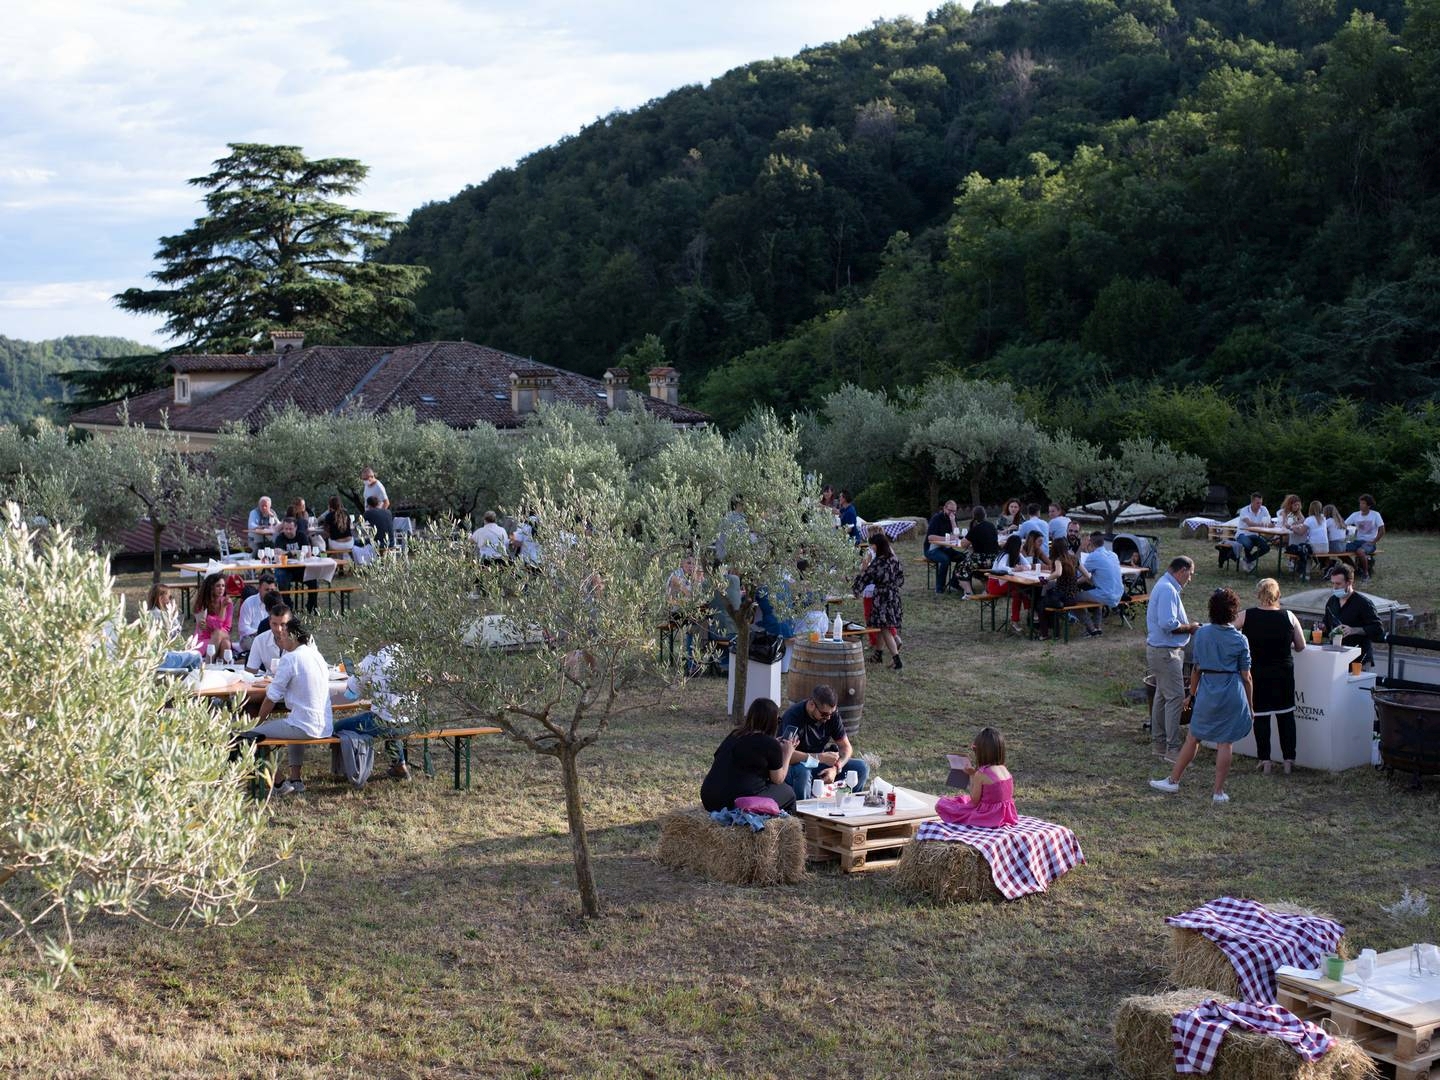 11-12 e 18-19 settembre Festival Franciacorta in Cantina – Gli eventi a La Montina, storica cantina di Monticelli Brusati